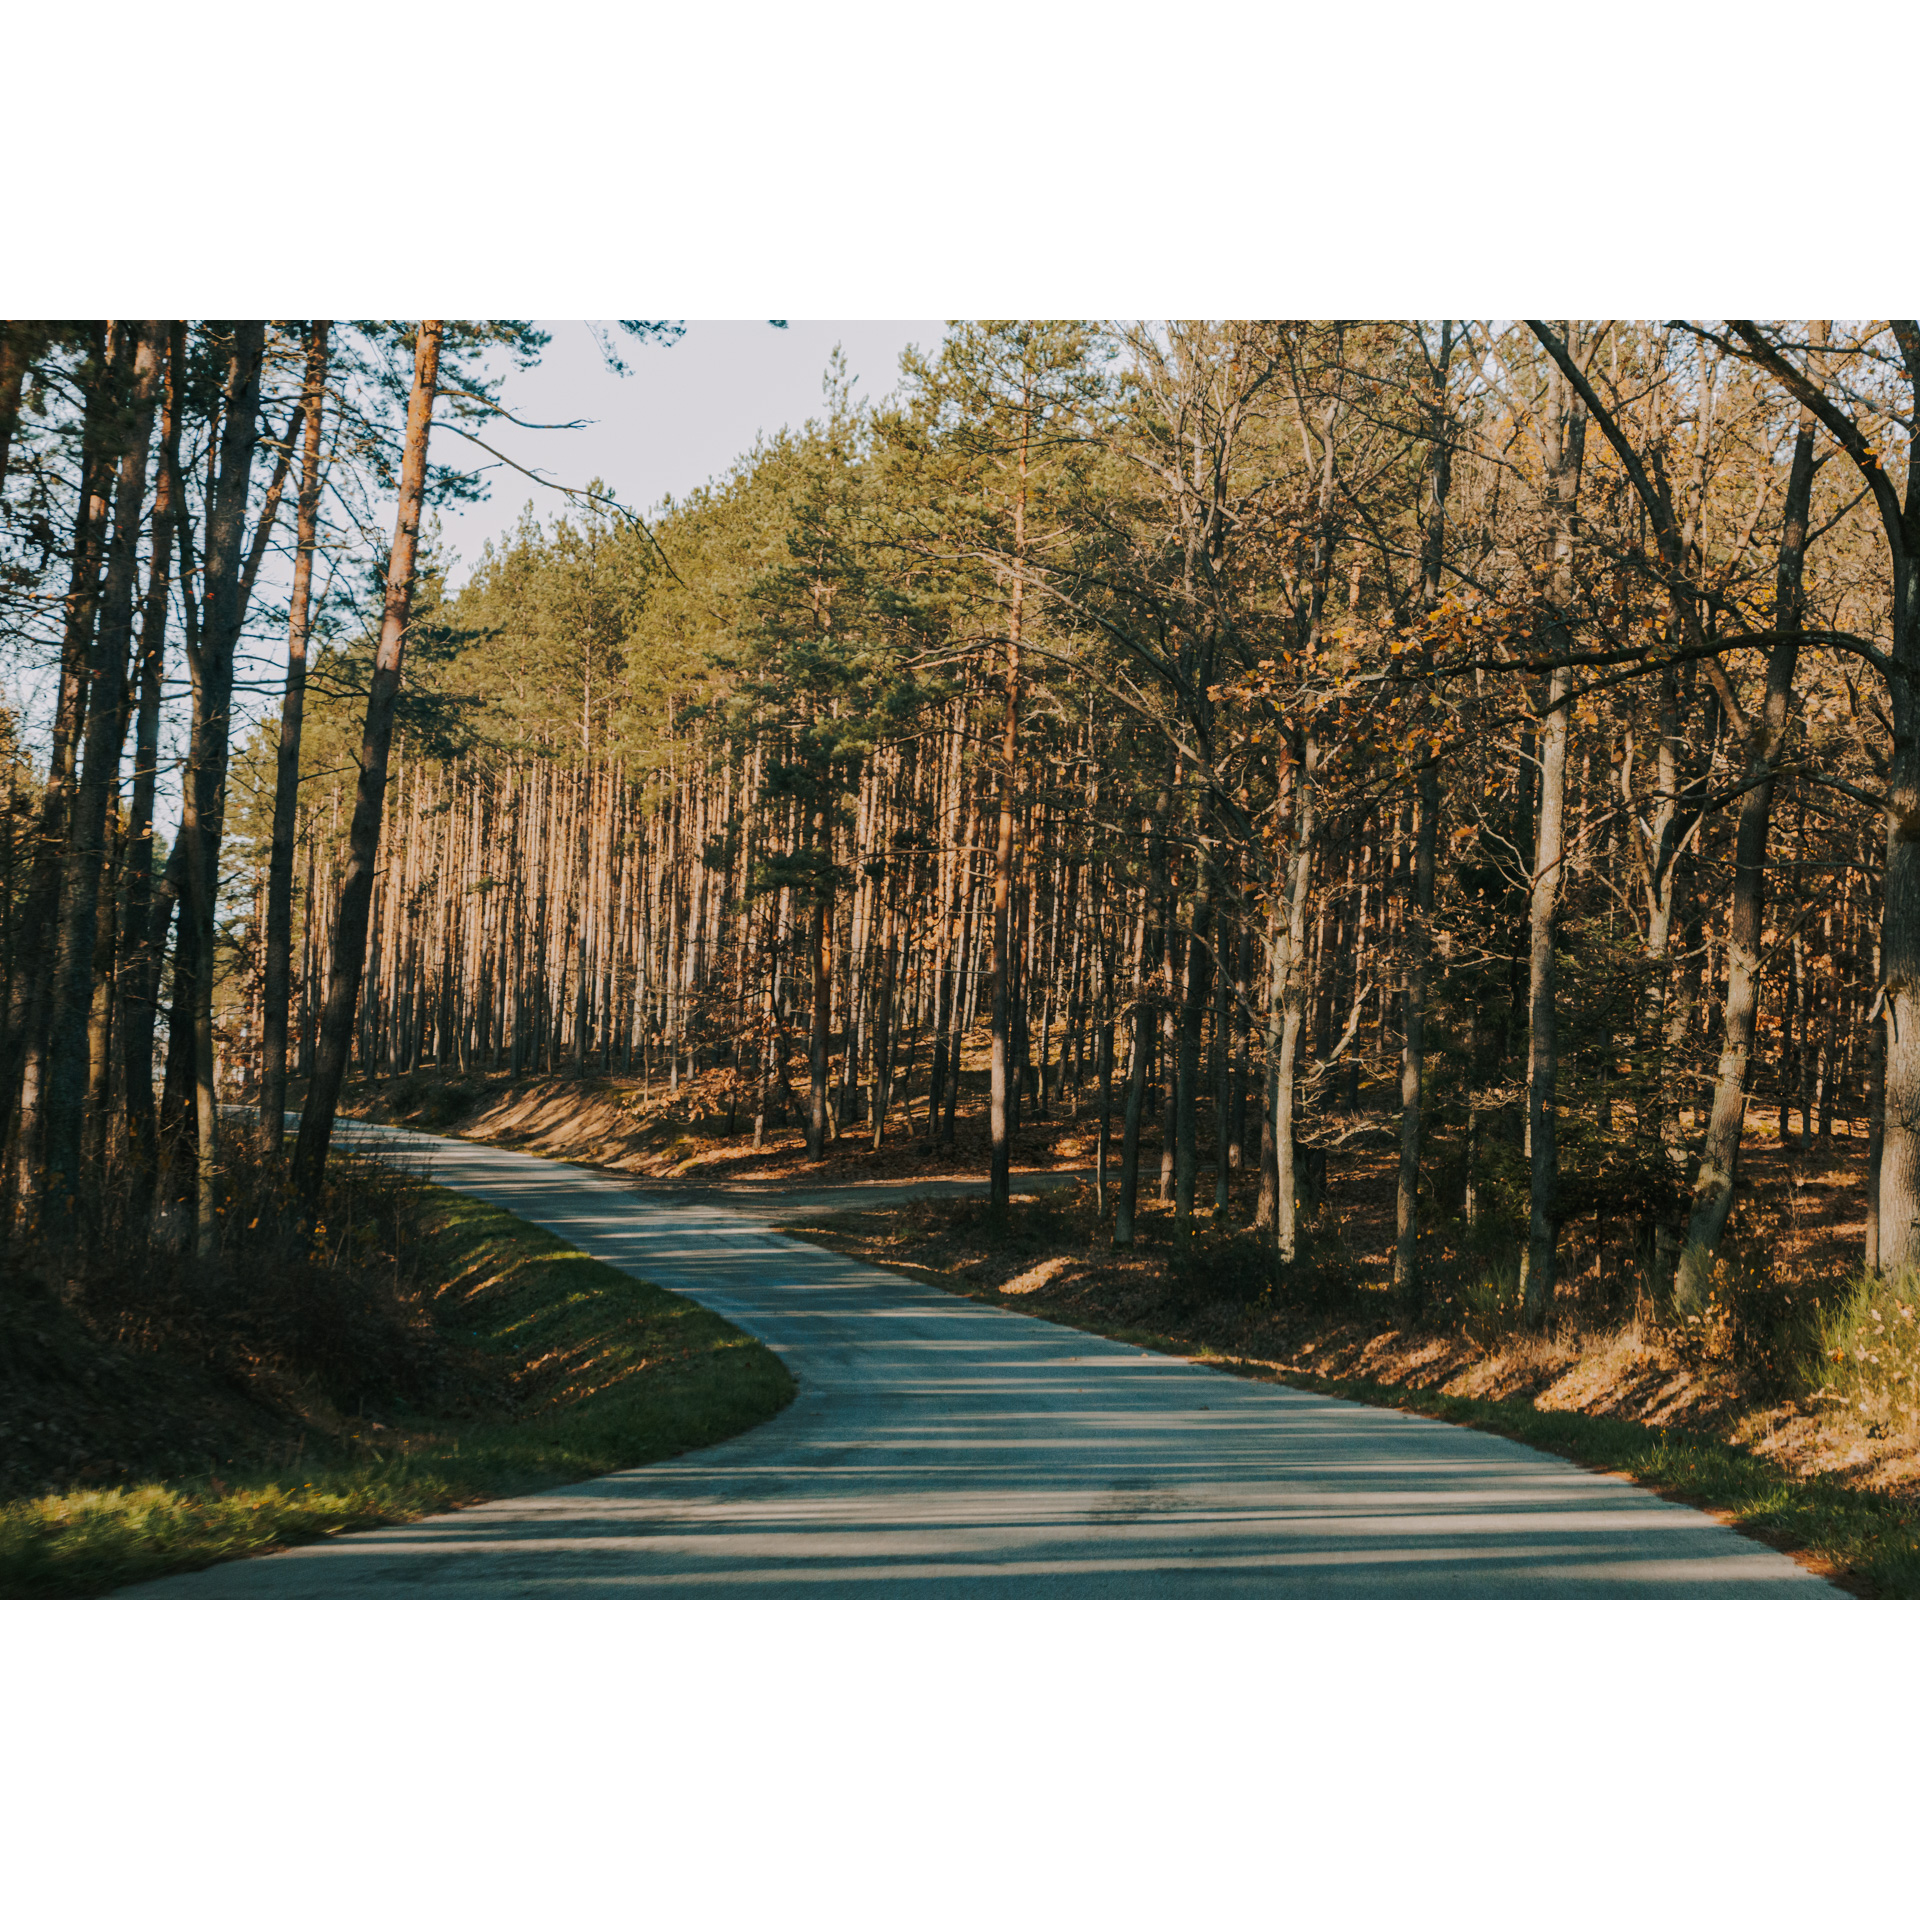 Droga asfaltowa prowadząca przez las z wysokimi drzewami iglastymi